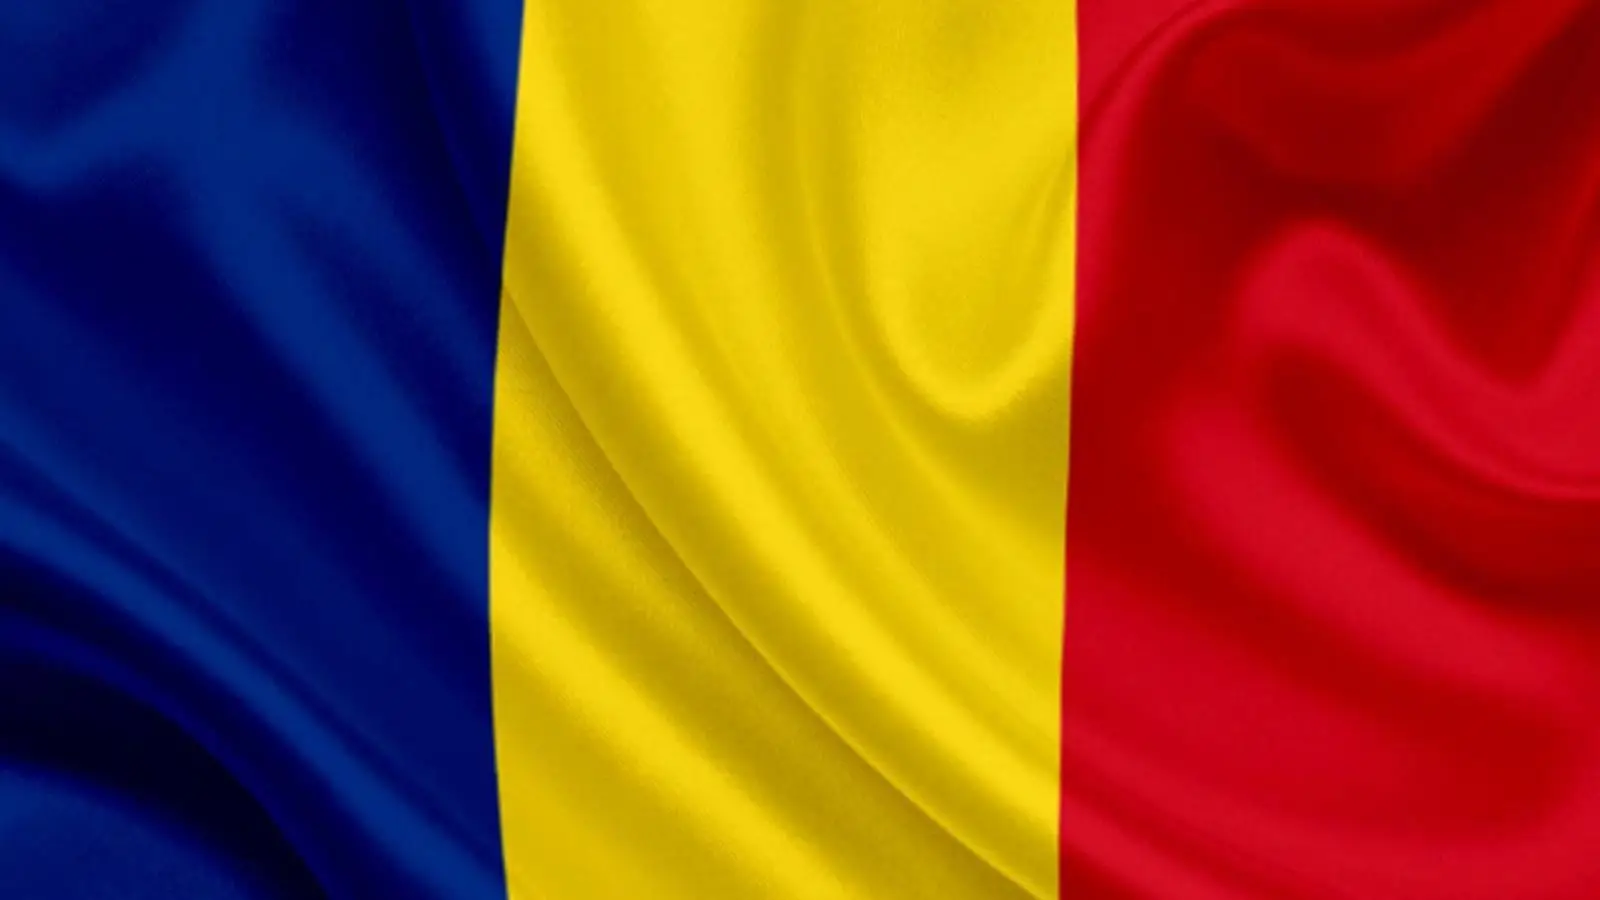 L'esercito rumeno annuncia 2 voli per missioni mediche